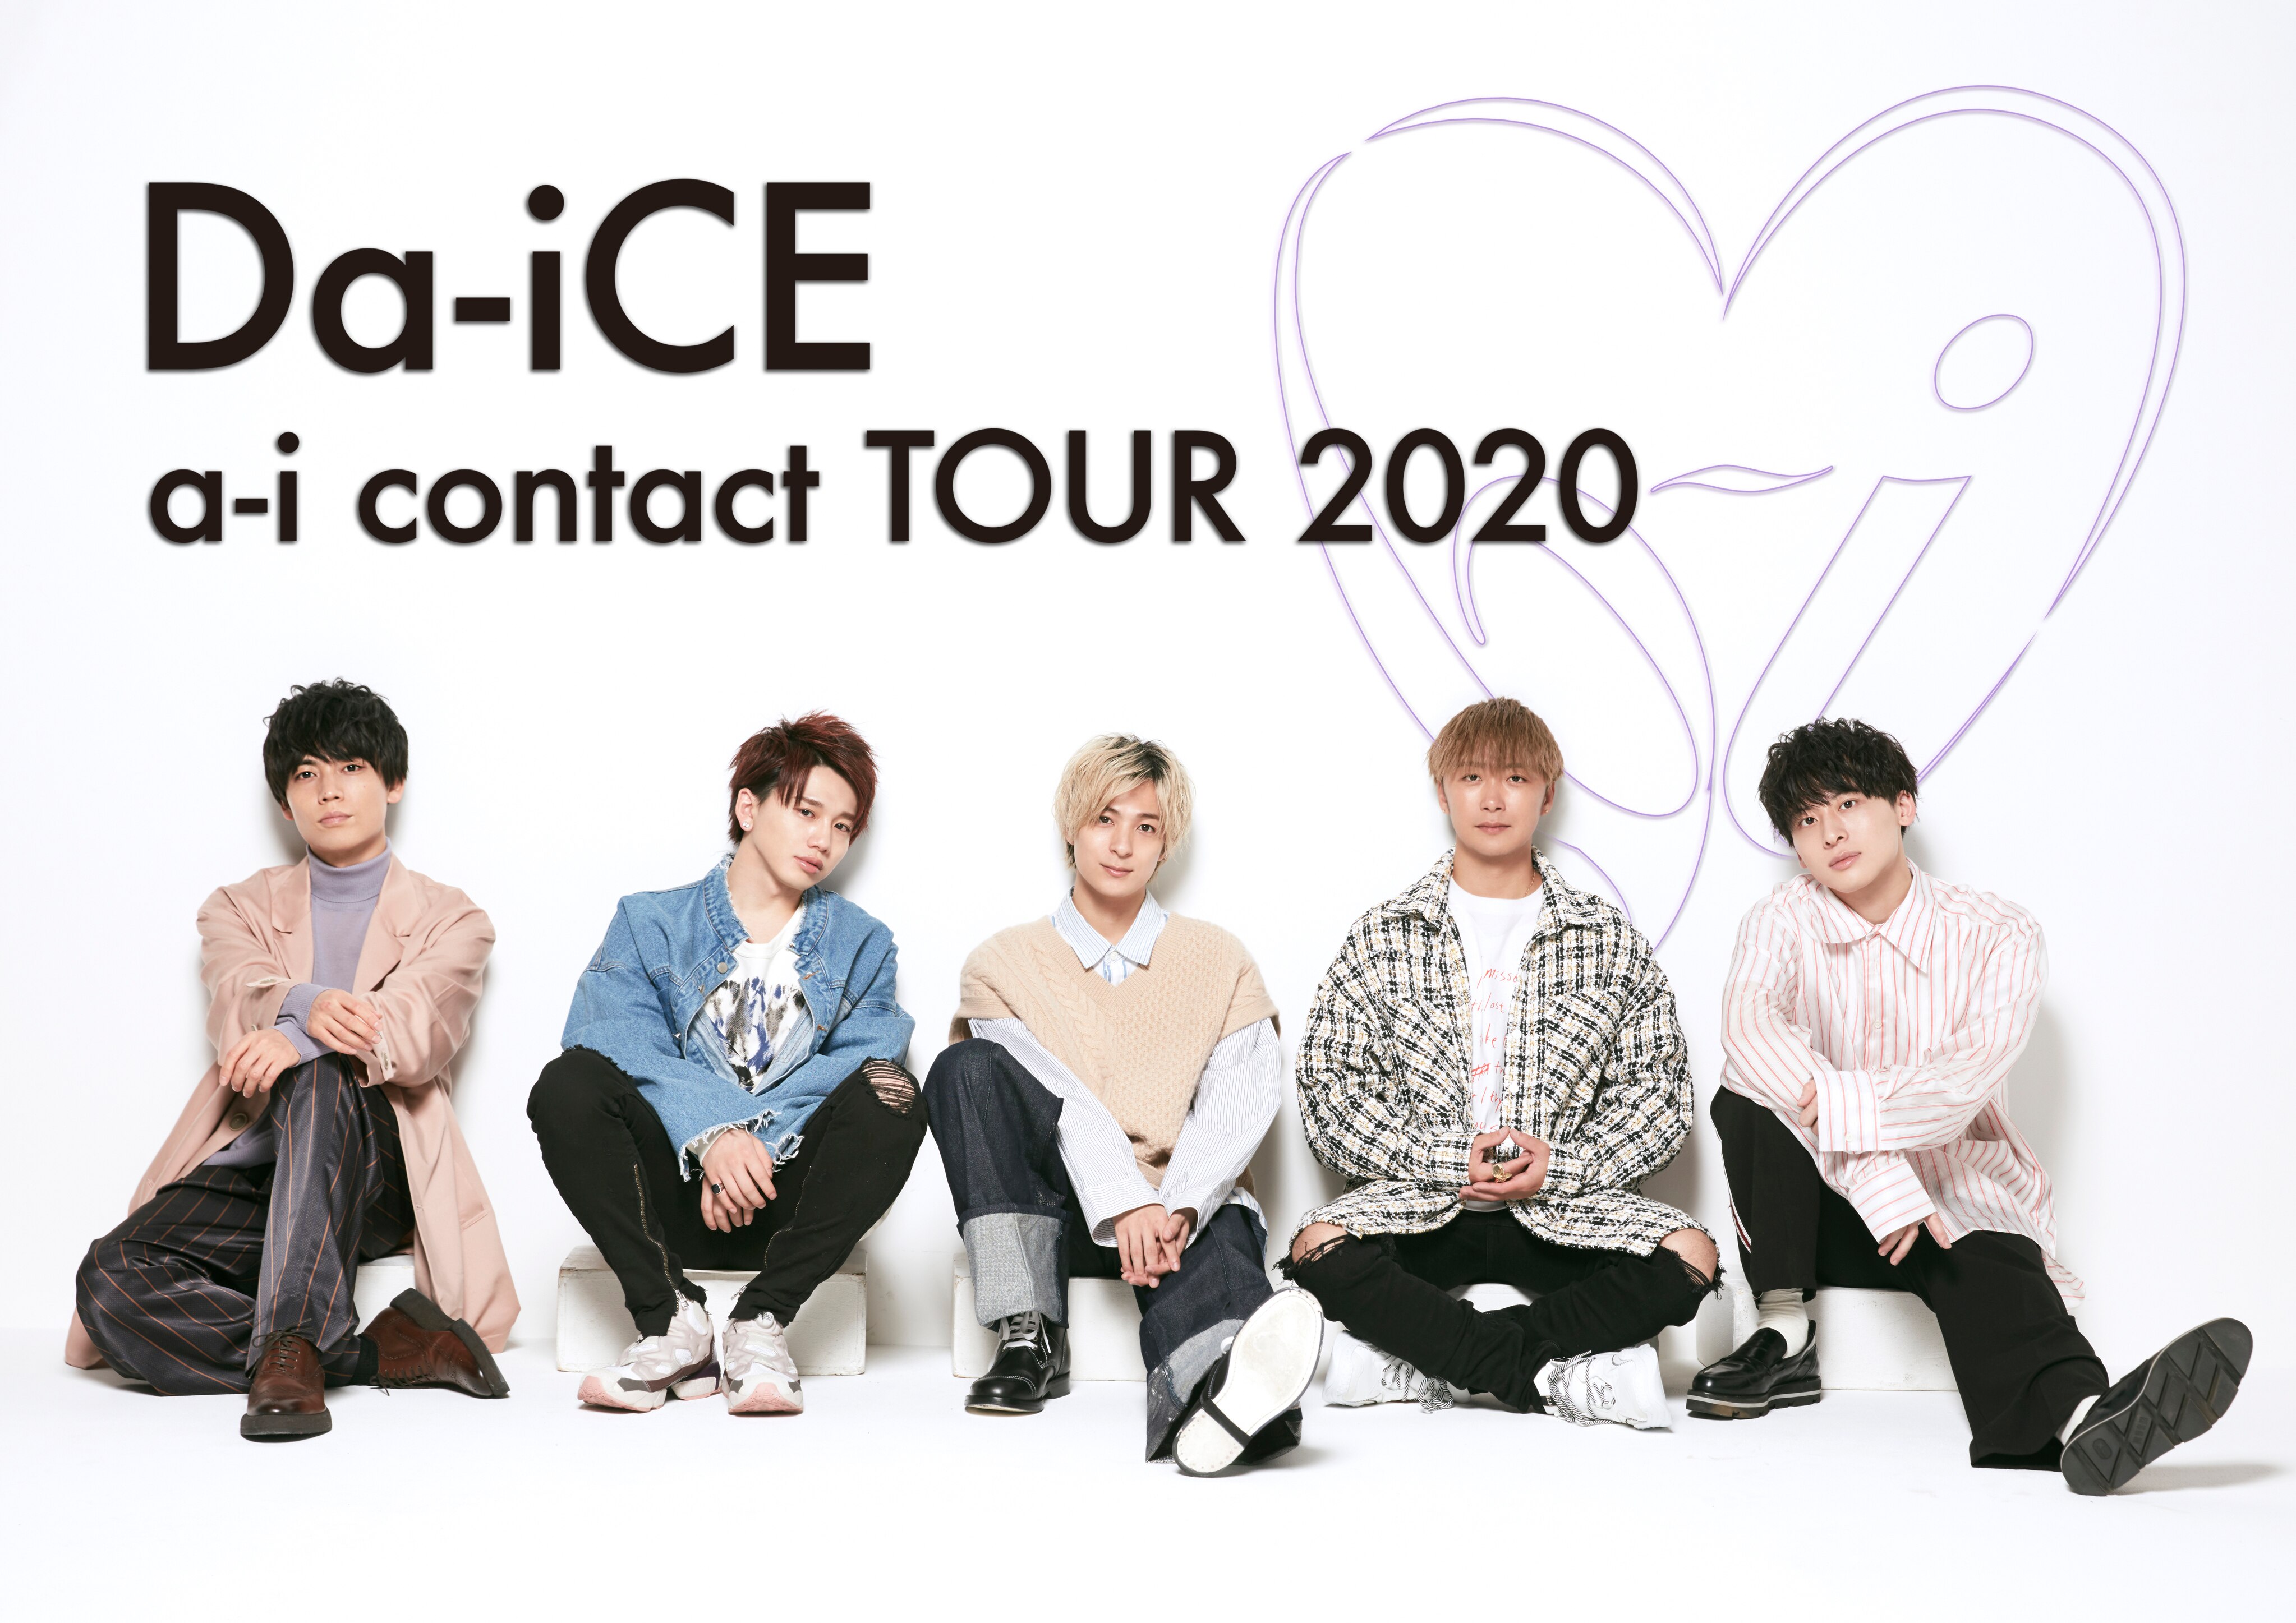 [グッズ情報]Da-iCE a-i contact TOUR 2020 - NEWS | Da-iCE（ダイス）オフィシャルサイト